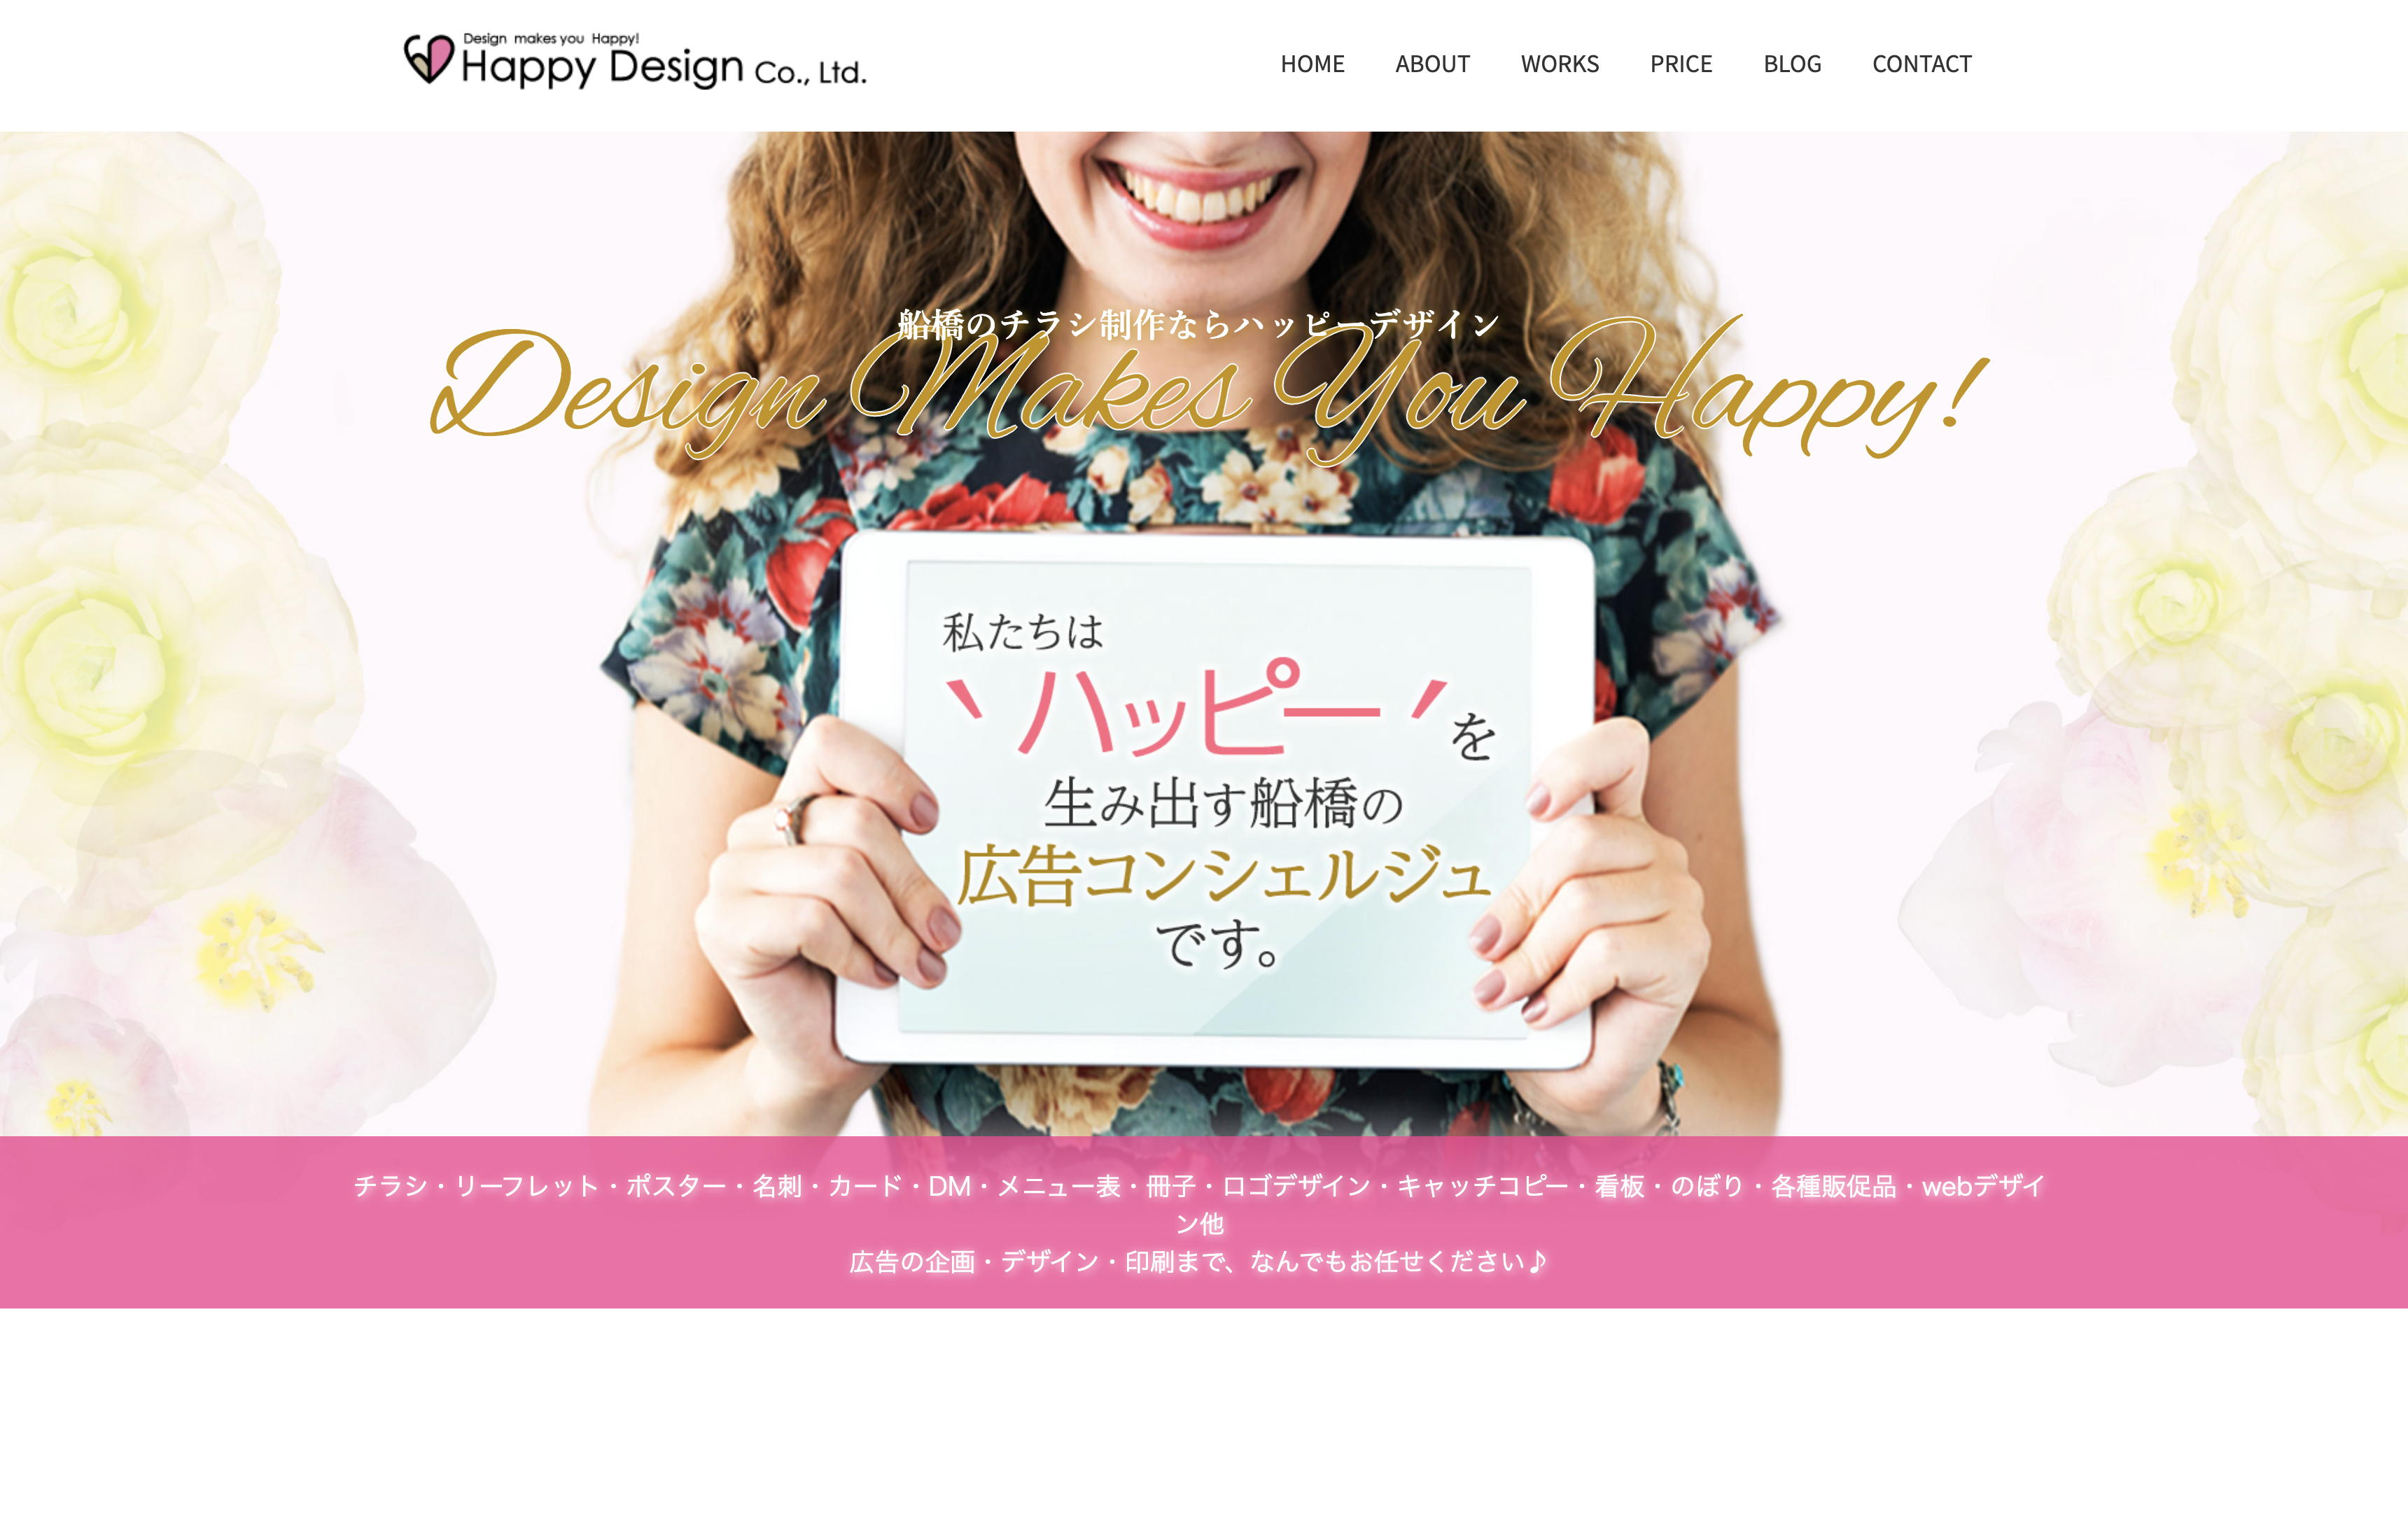 Happy Design 株式会社のHappy Design株式会社:デザイン制作サービス